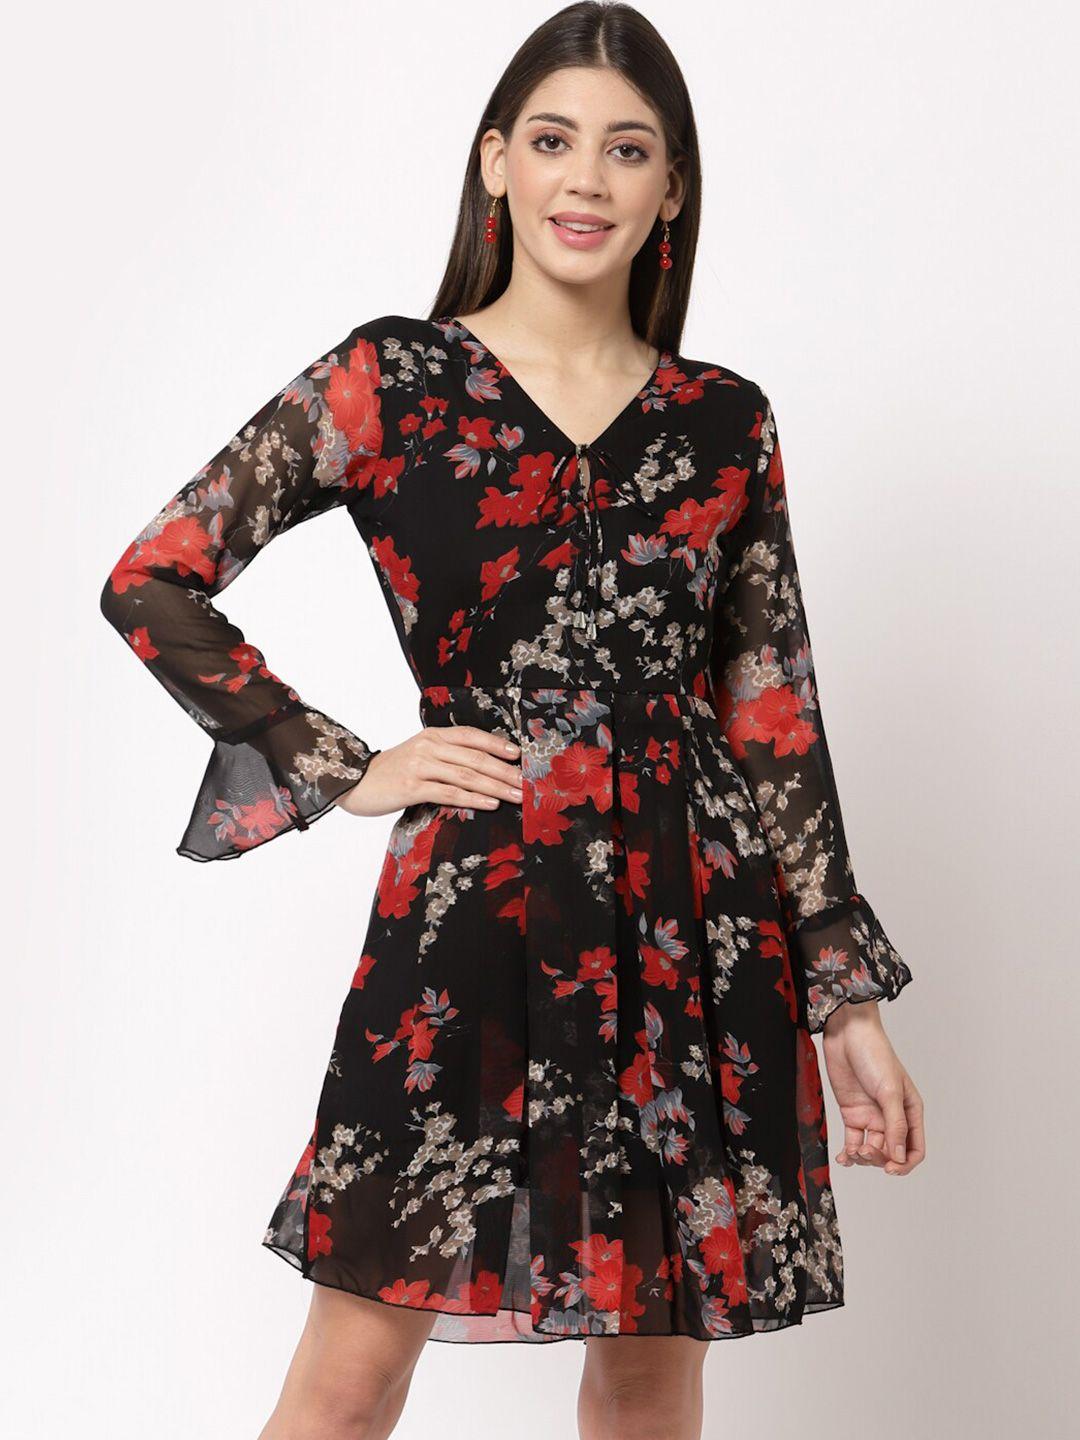 aayu black & red floral printed tie-up neck georgette a-line dress